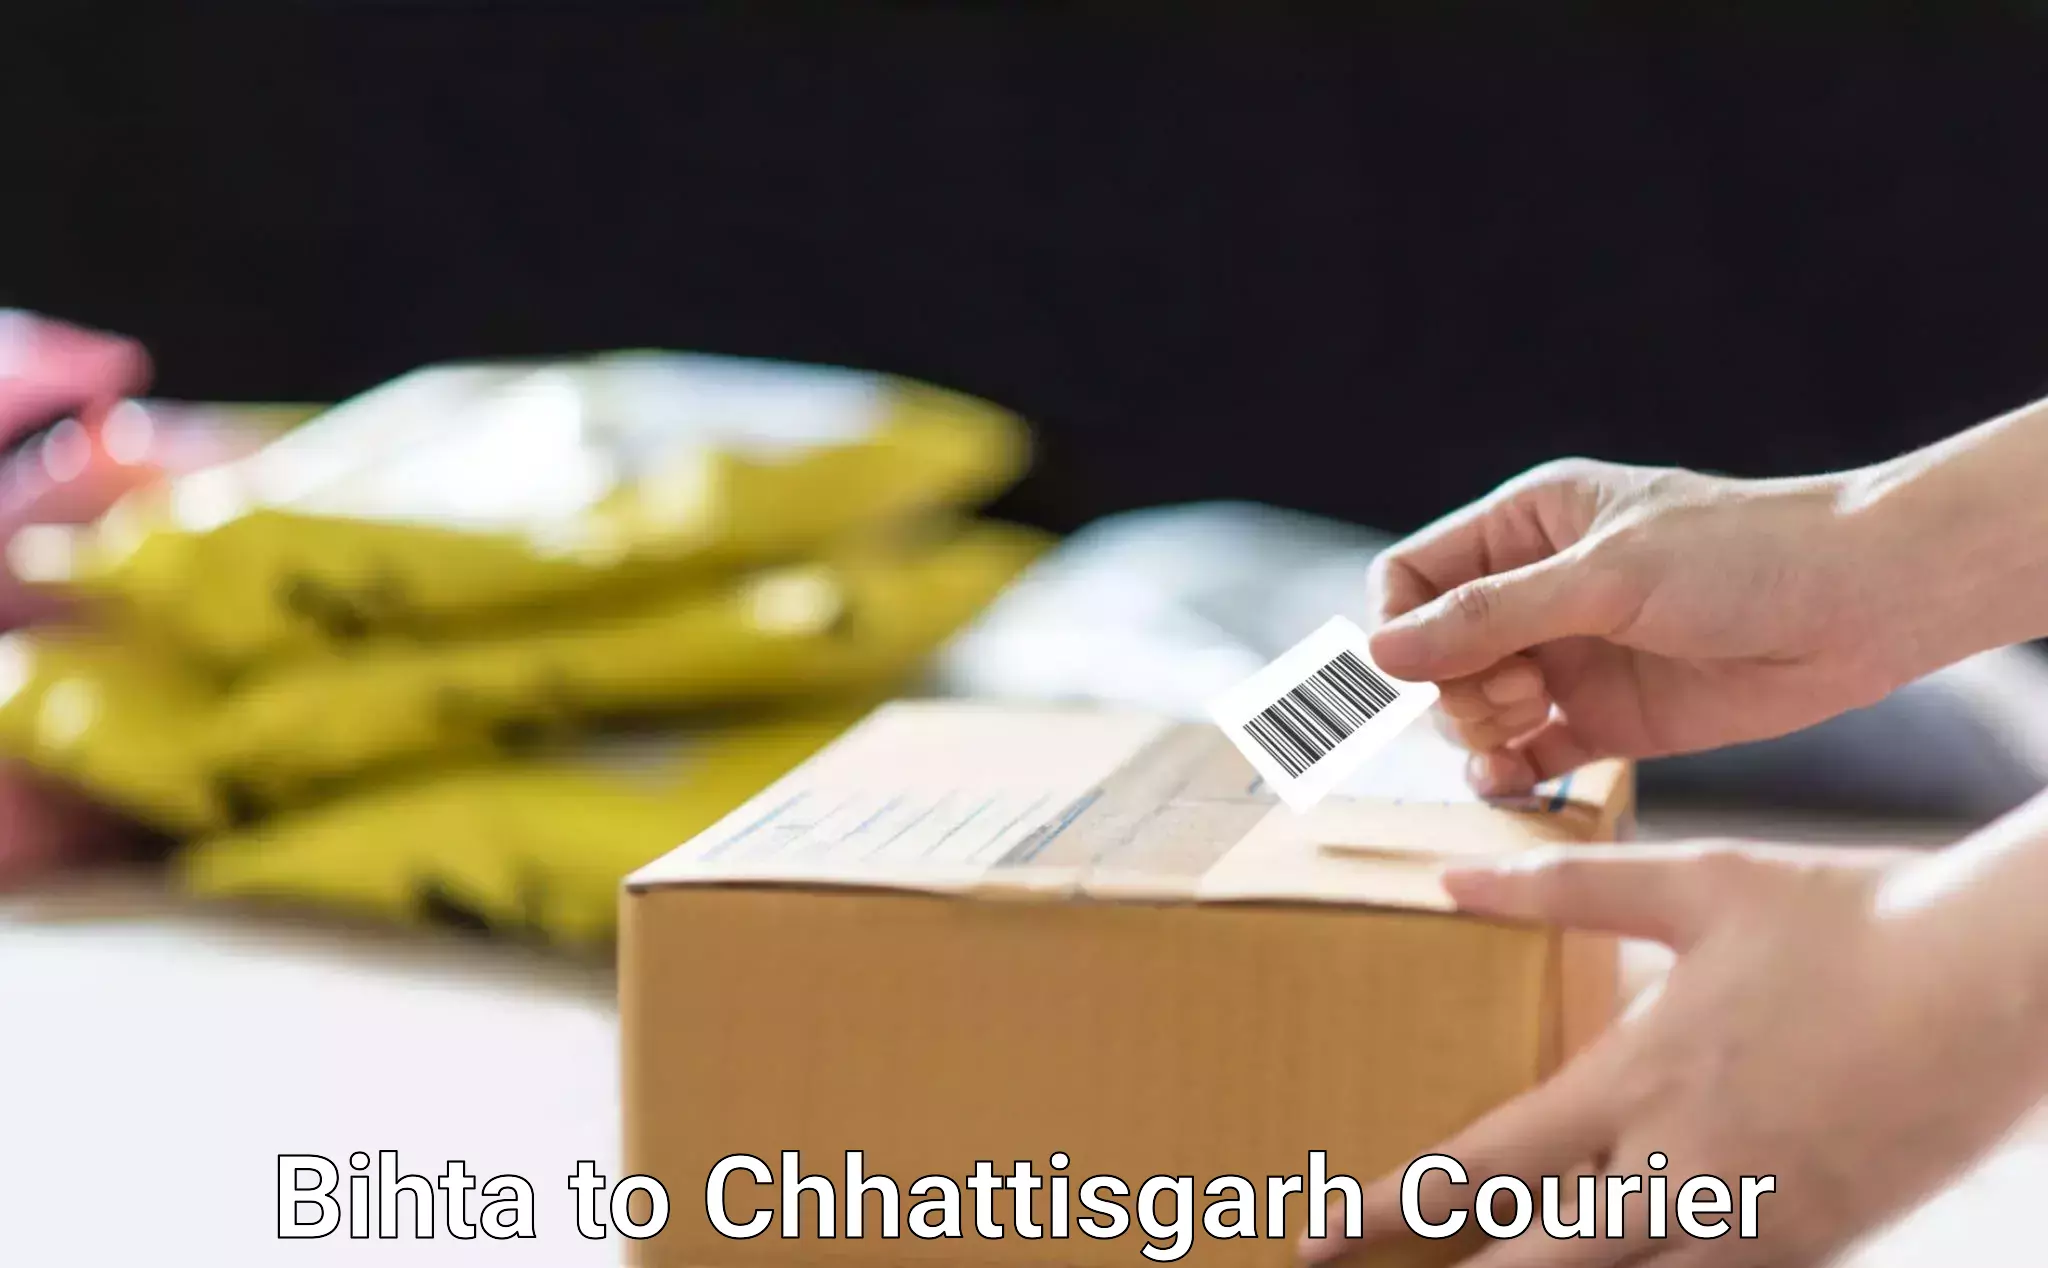 Trusted relocation services Bihta to Chhattisgarh